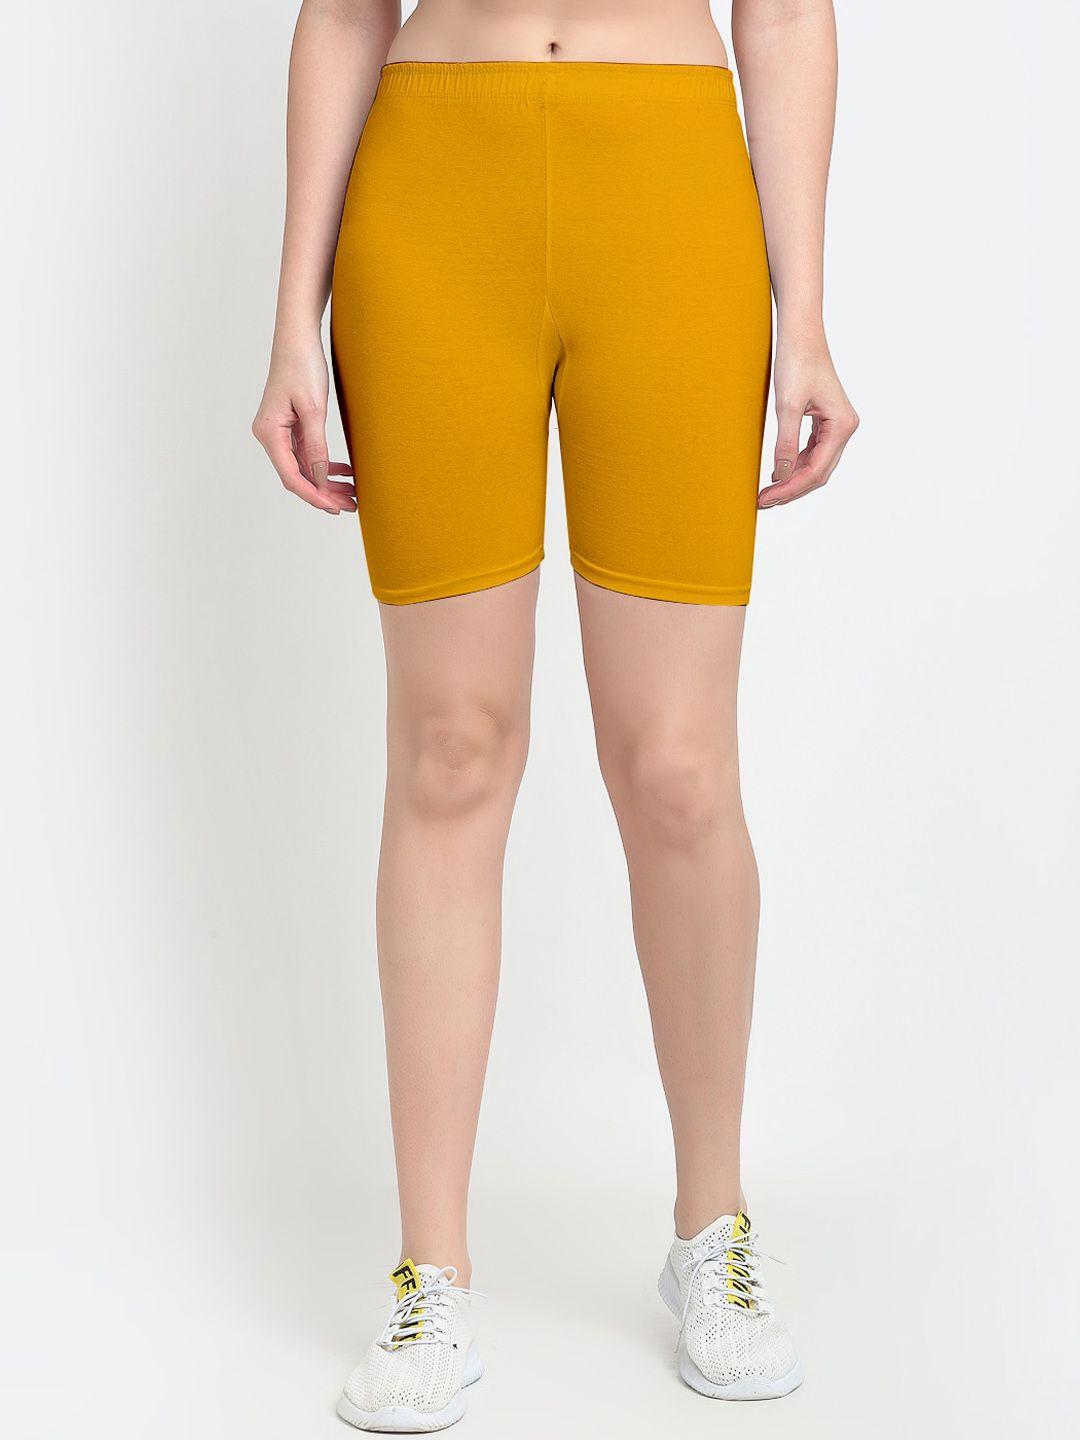 jinfo women yellow cycling sports shorts